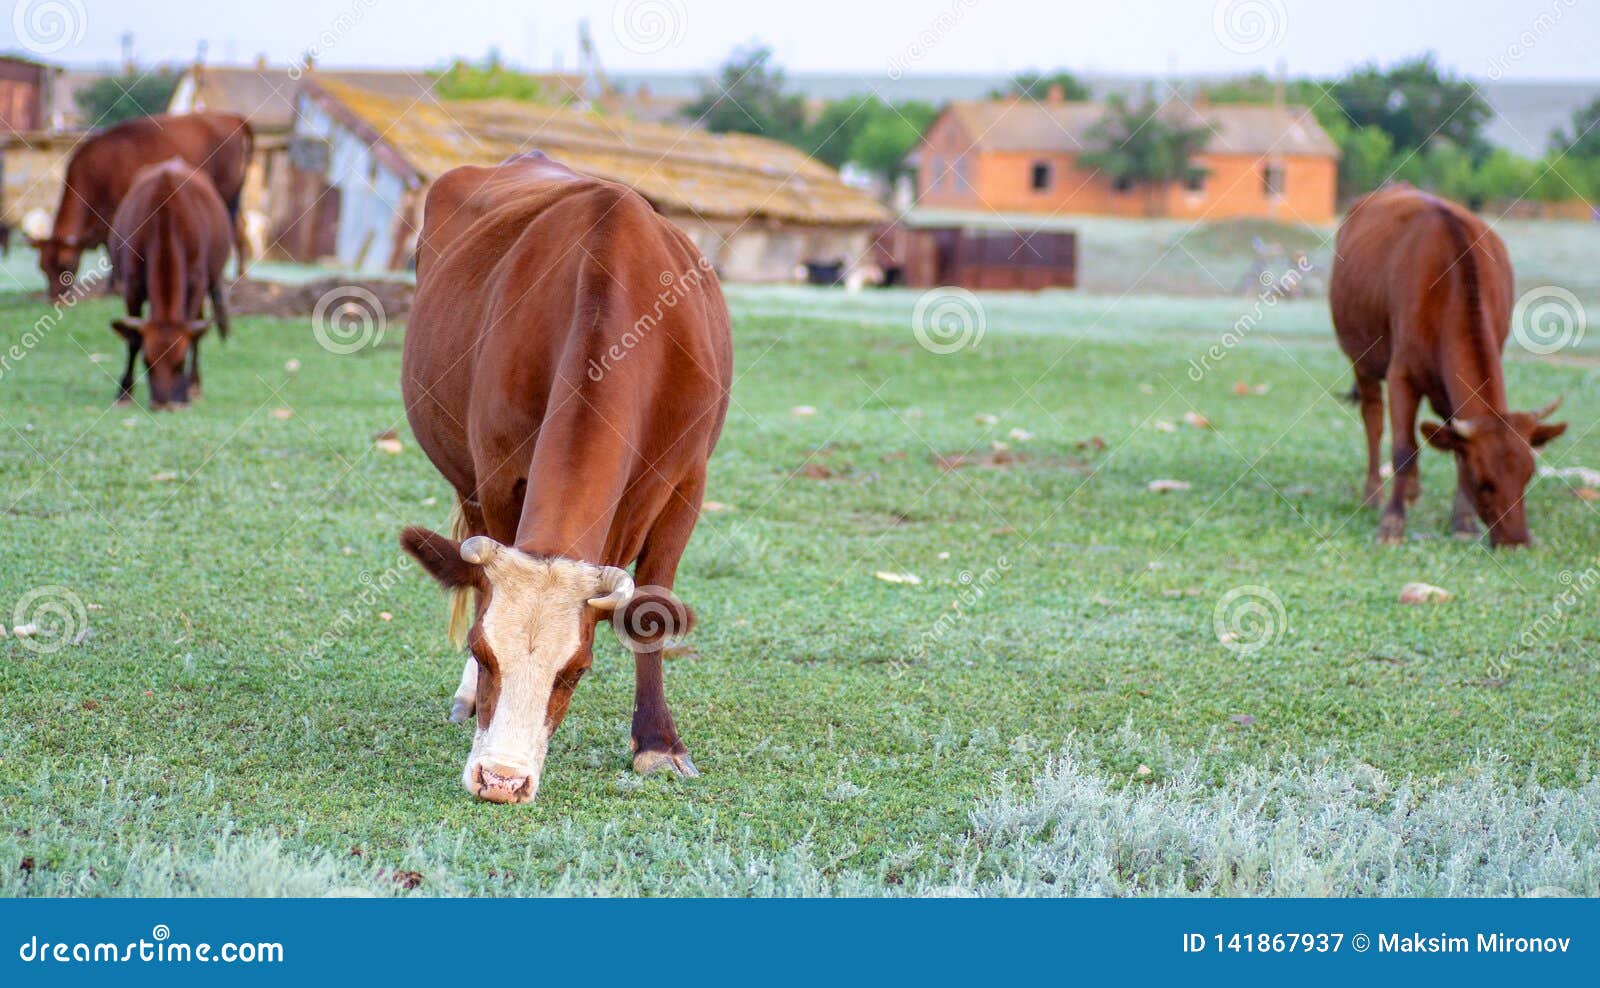 Vaca en un pasto del verano. Vaca con lanas marrones que pasta en un prado de la estepa en un día de verano Granja de la vaca de leche